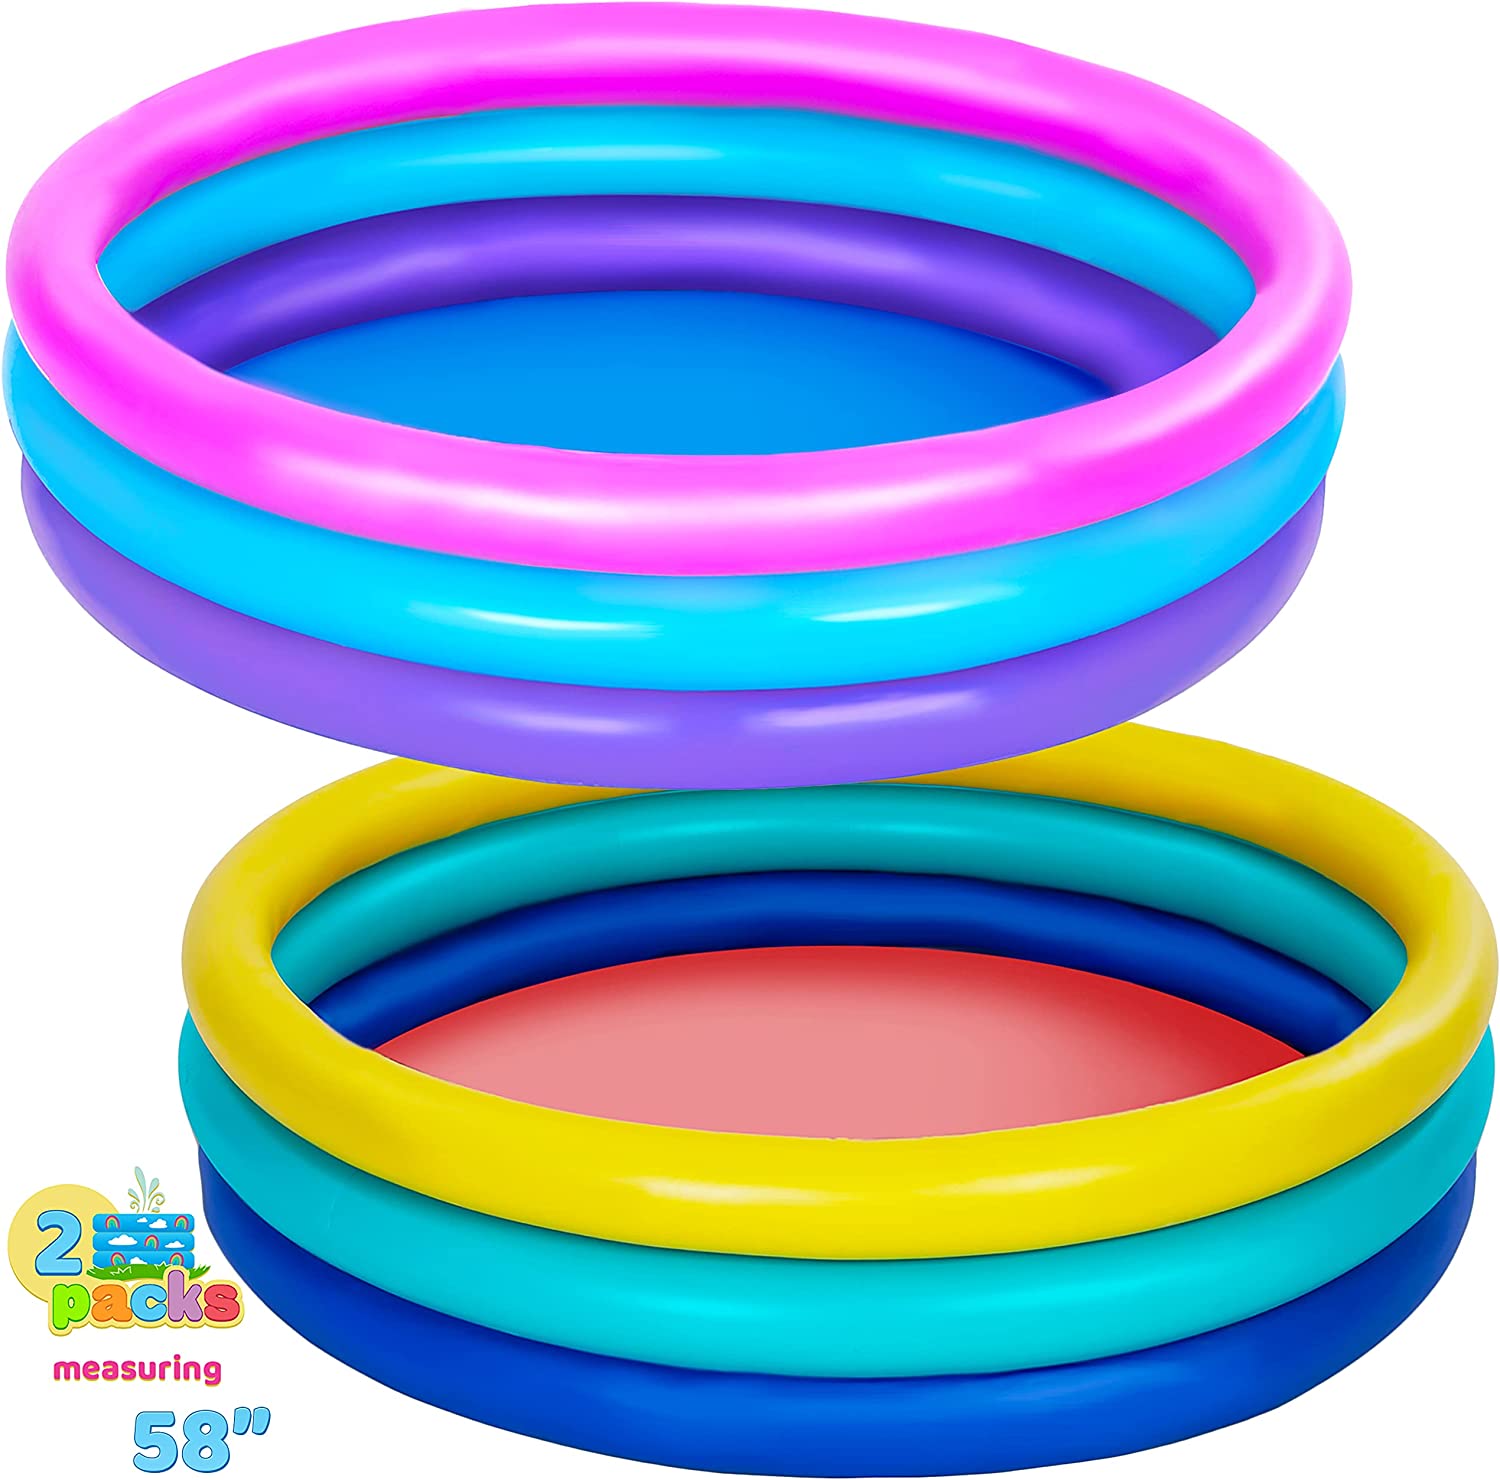 2 Pack 58'' Multicolor Inflatable Kiddie Pools Set, Summer Fun Swimming Pool for Kids, Water Pool,  Kiddie Pool, Ball Pit Pool, Indoor & Outdoor uses (58 x 13)